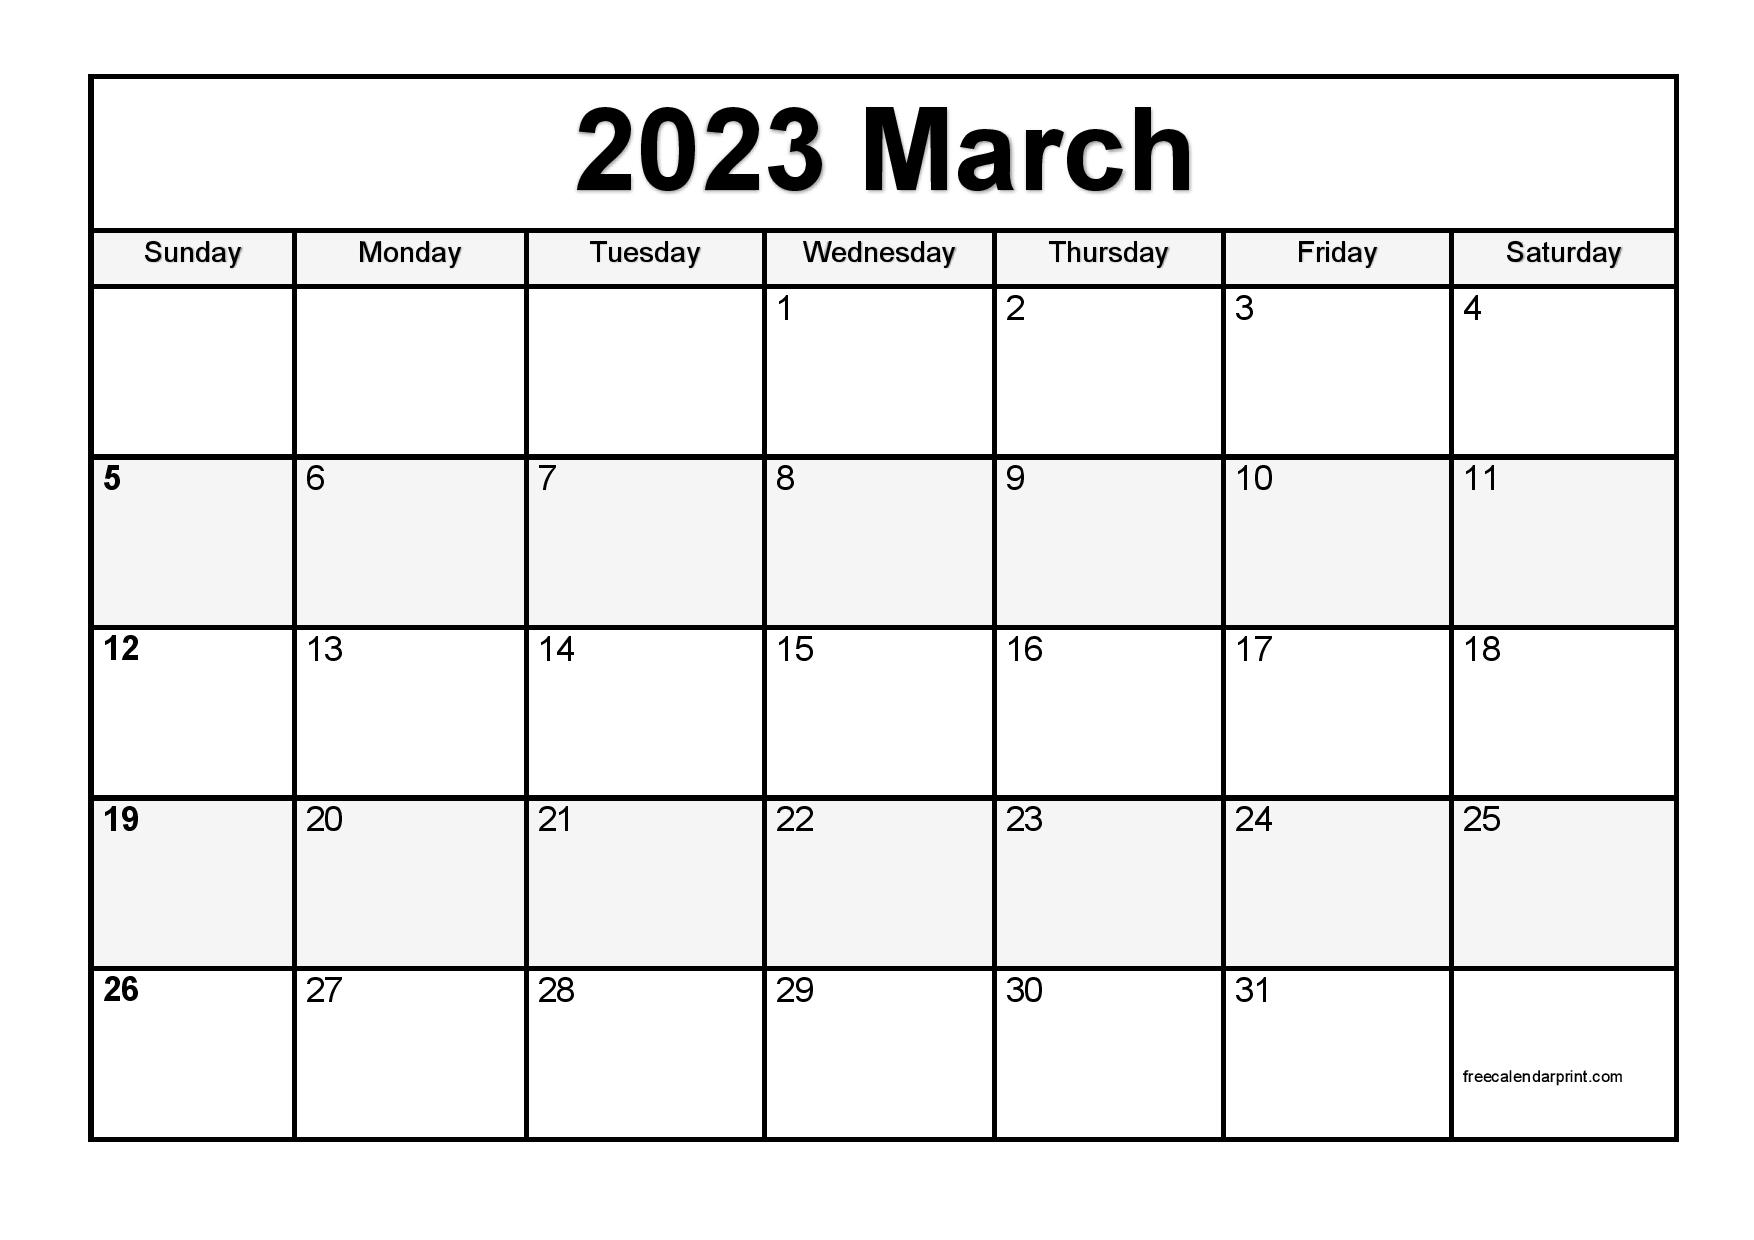 March 2023 Calendar